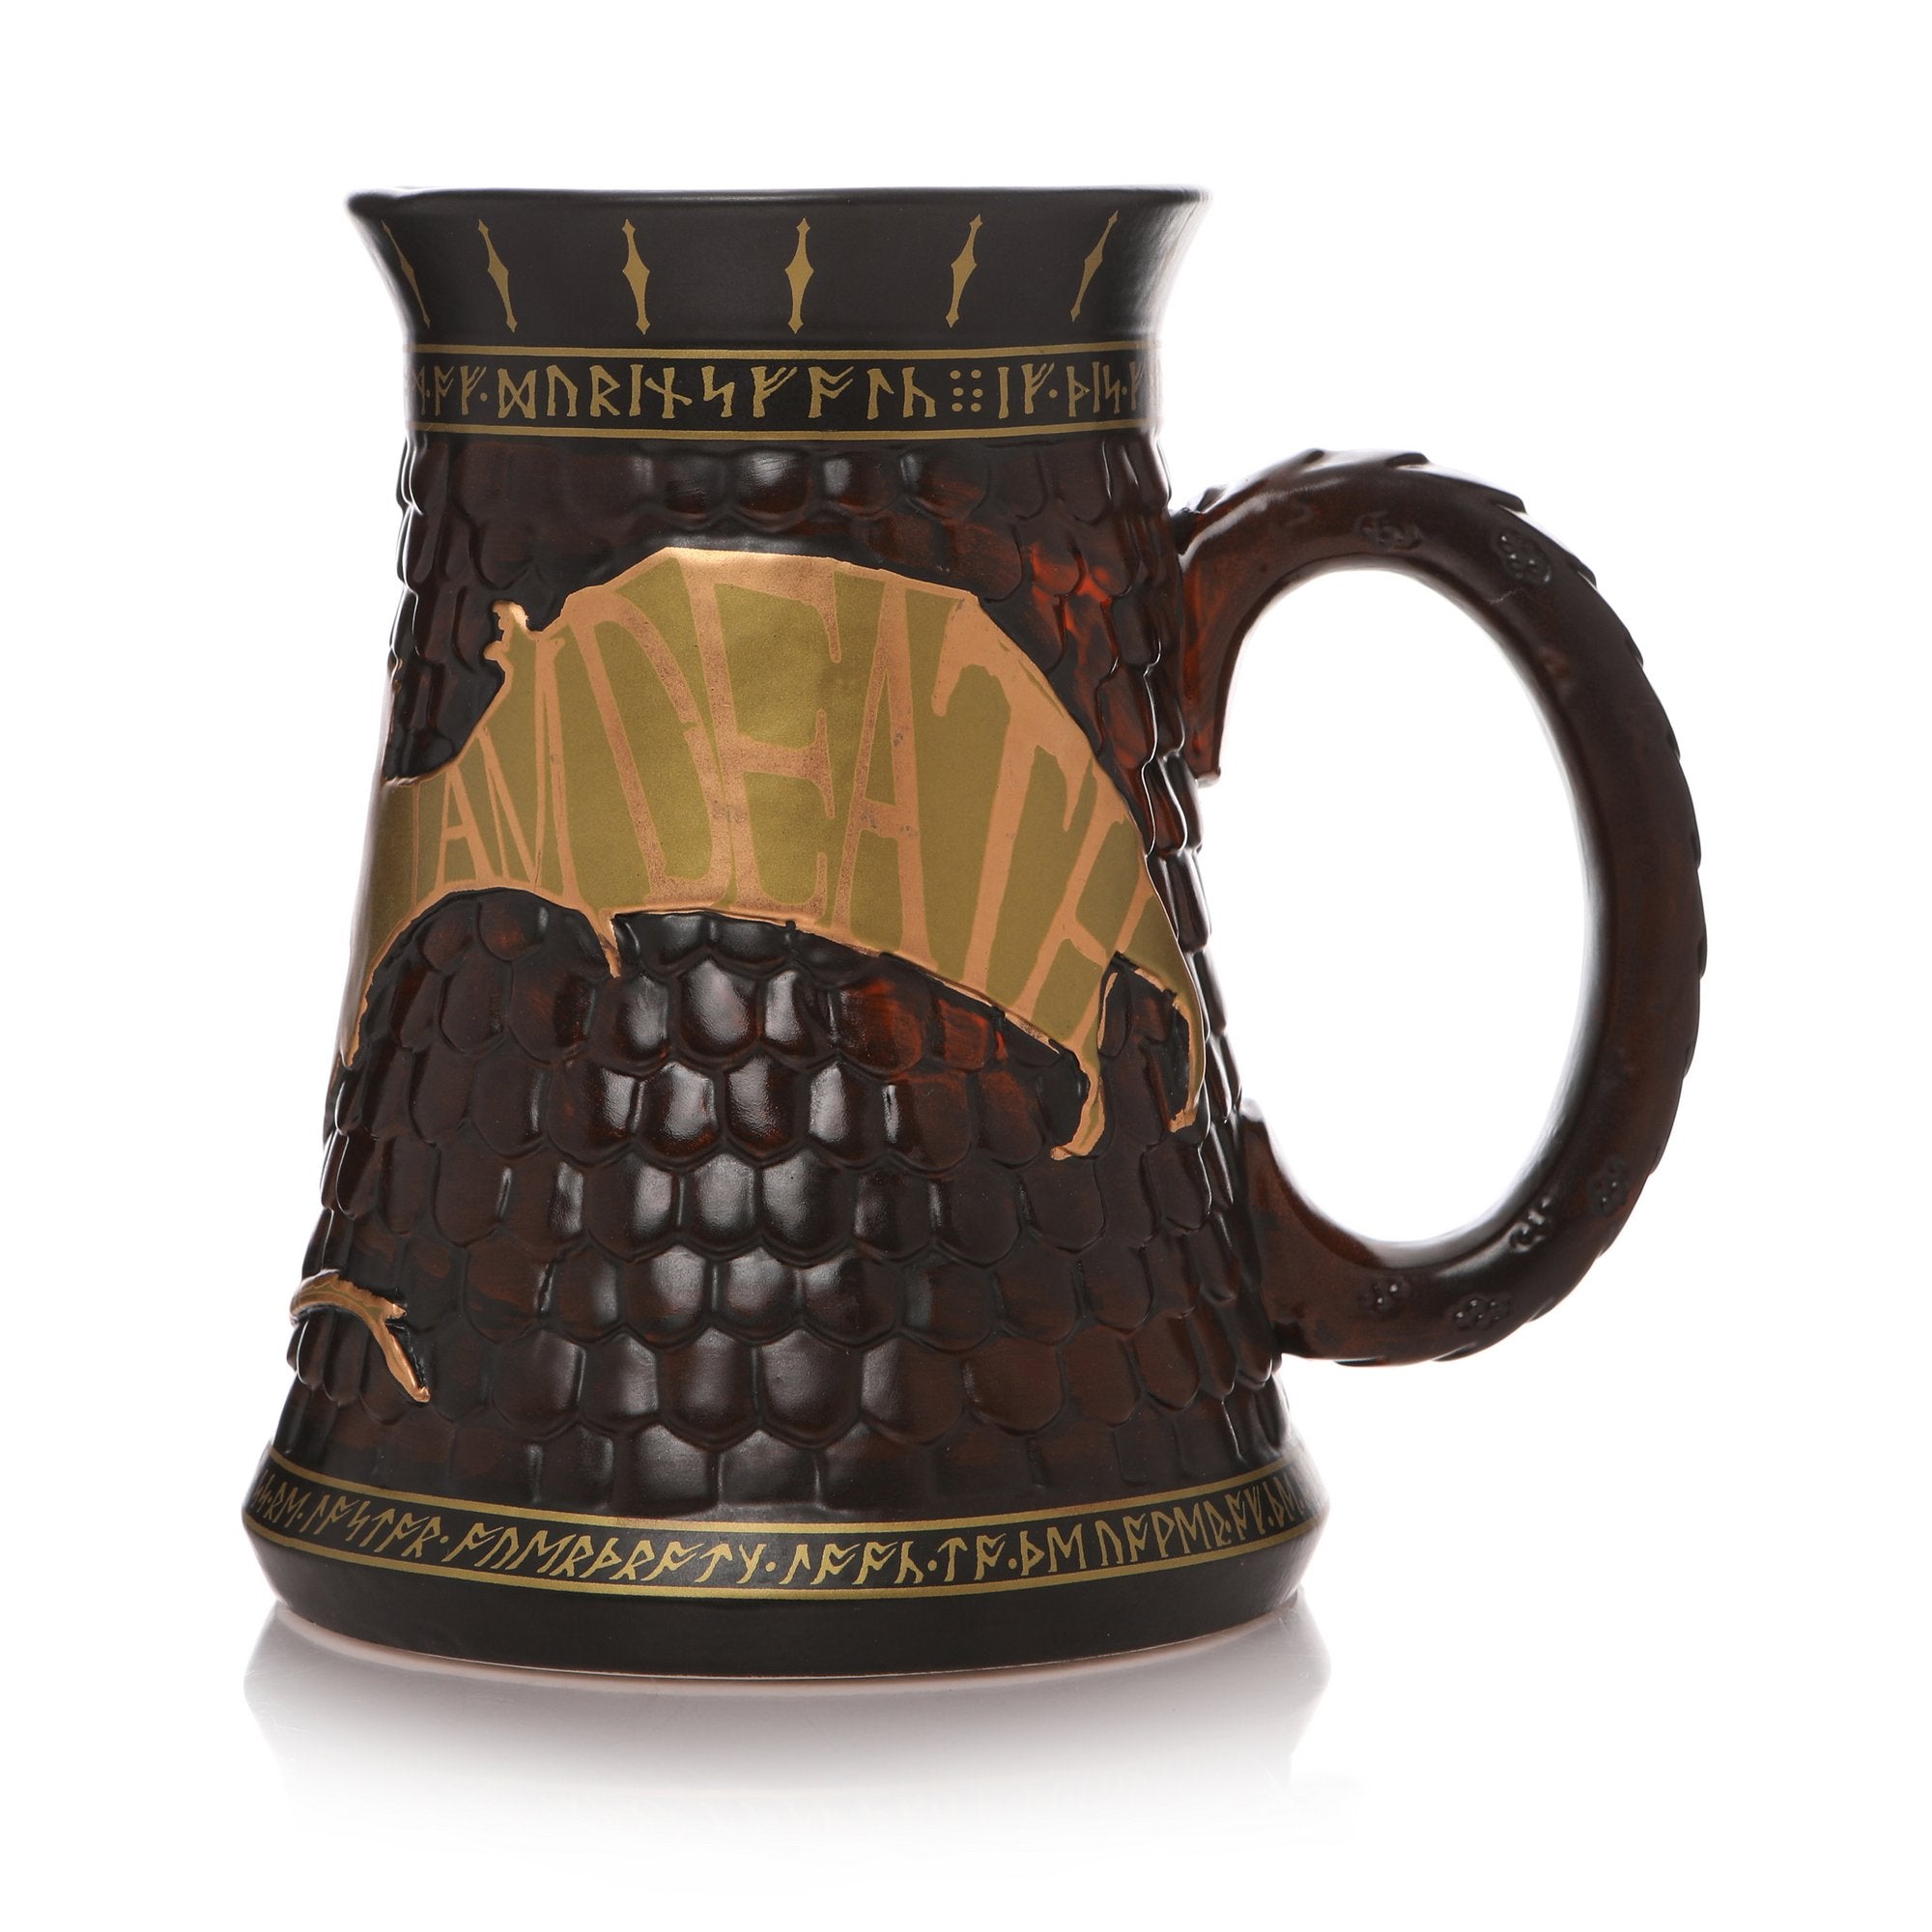 The Hobbit Collectable Stein Mug - Smaug